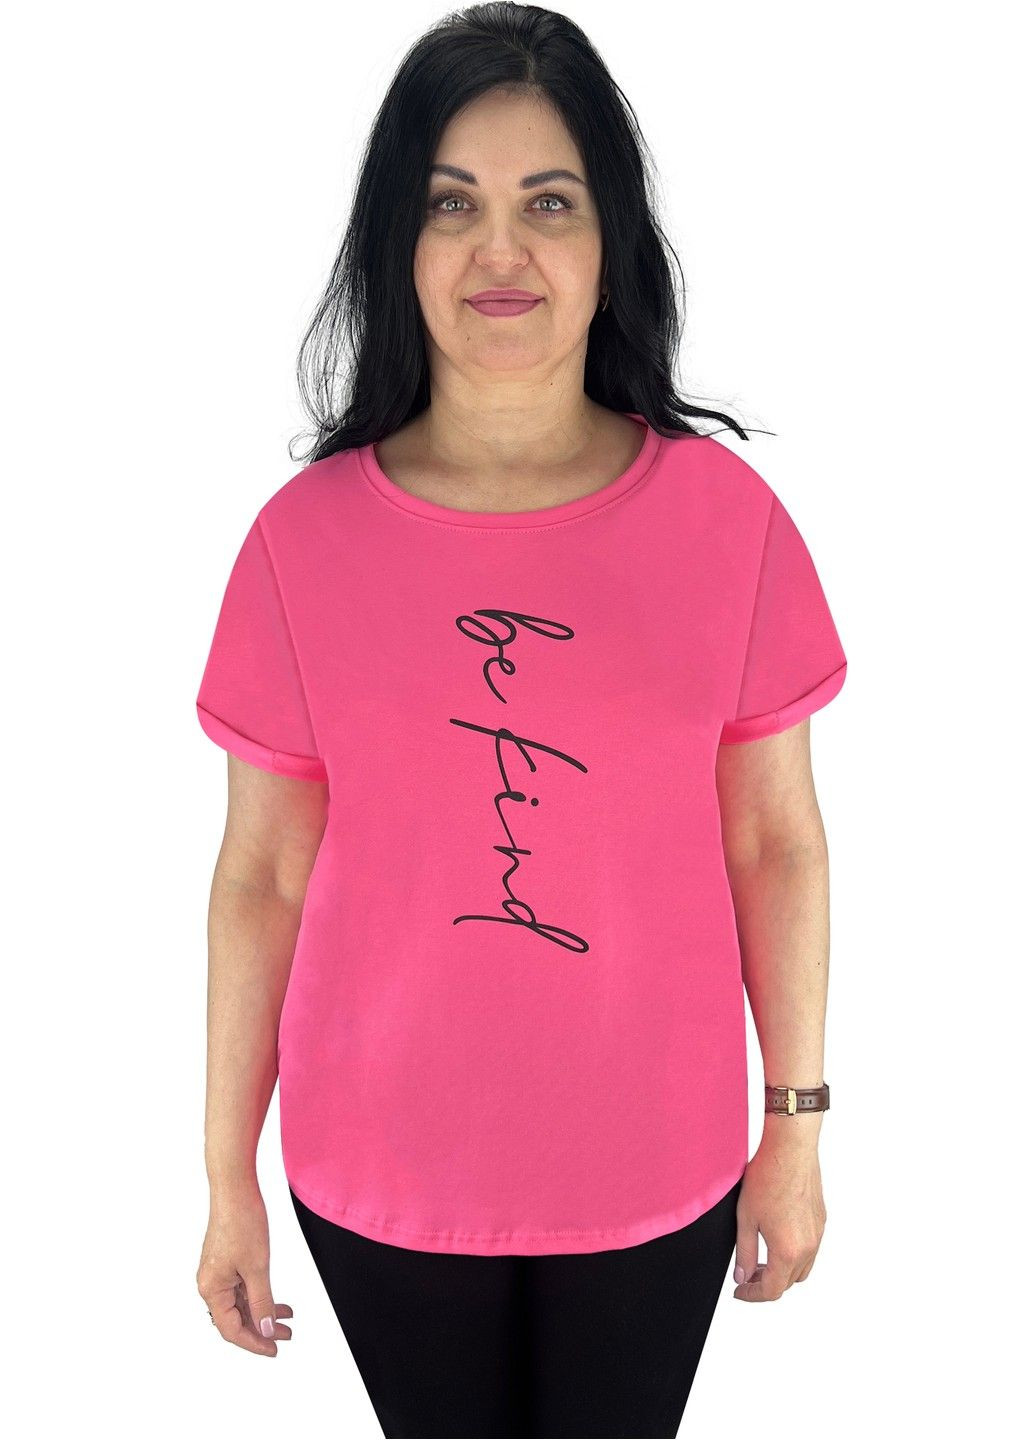 Розовая футболка женская с накатом с коротким рукавом Жемчужина стилей 4693